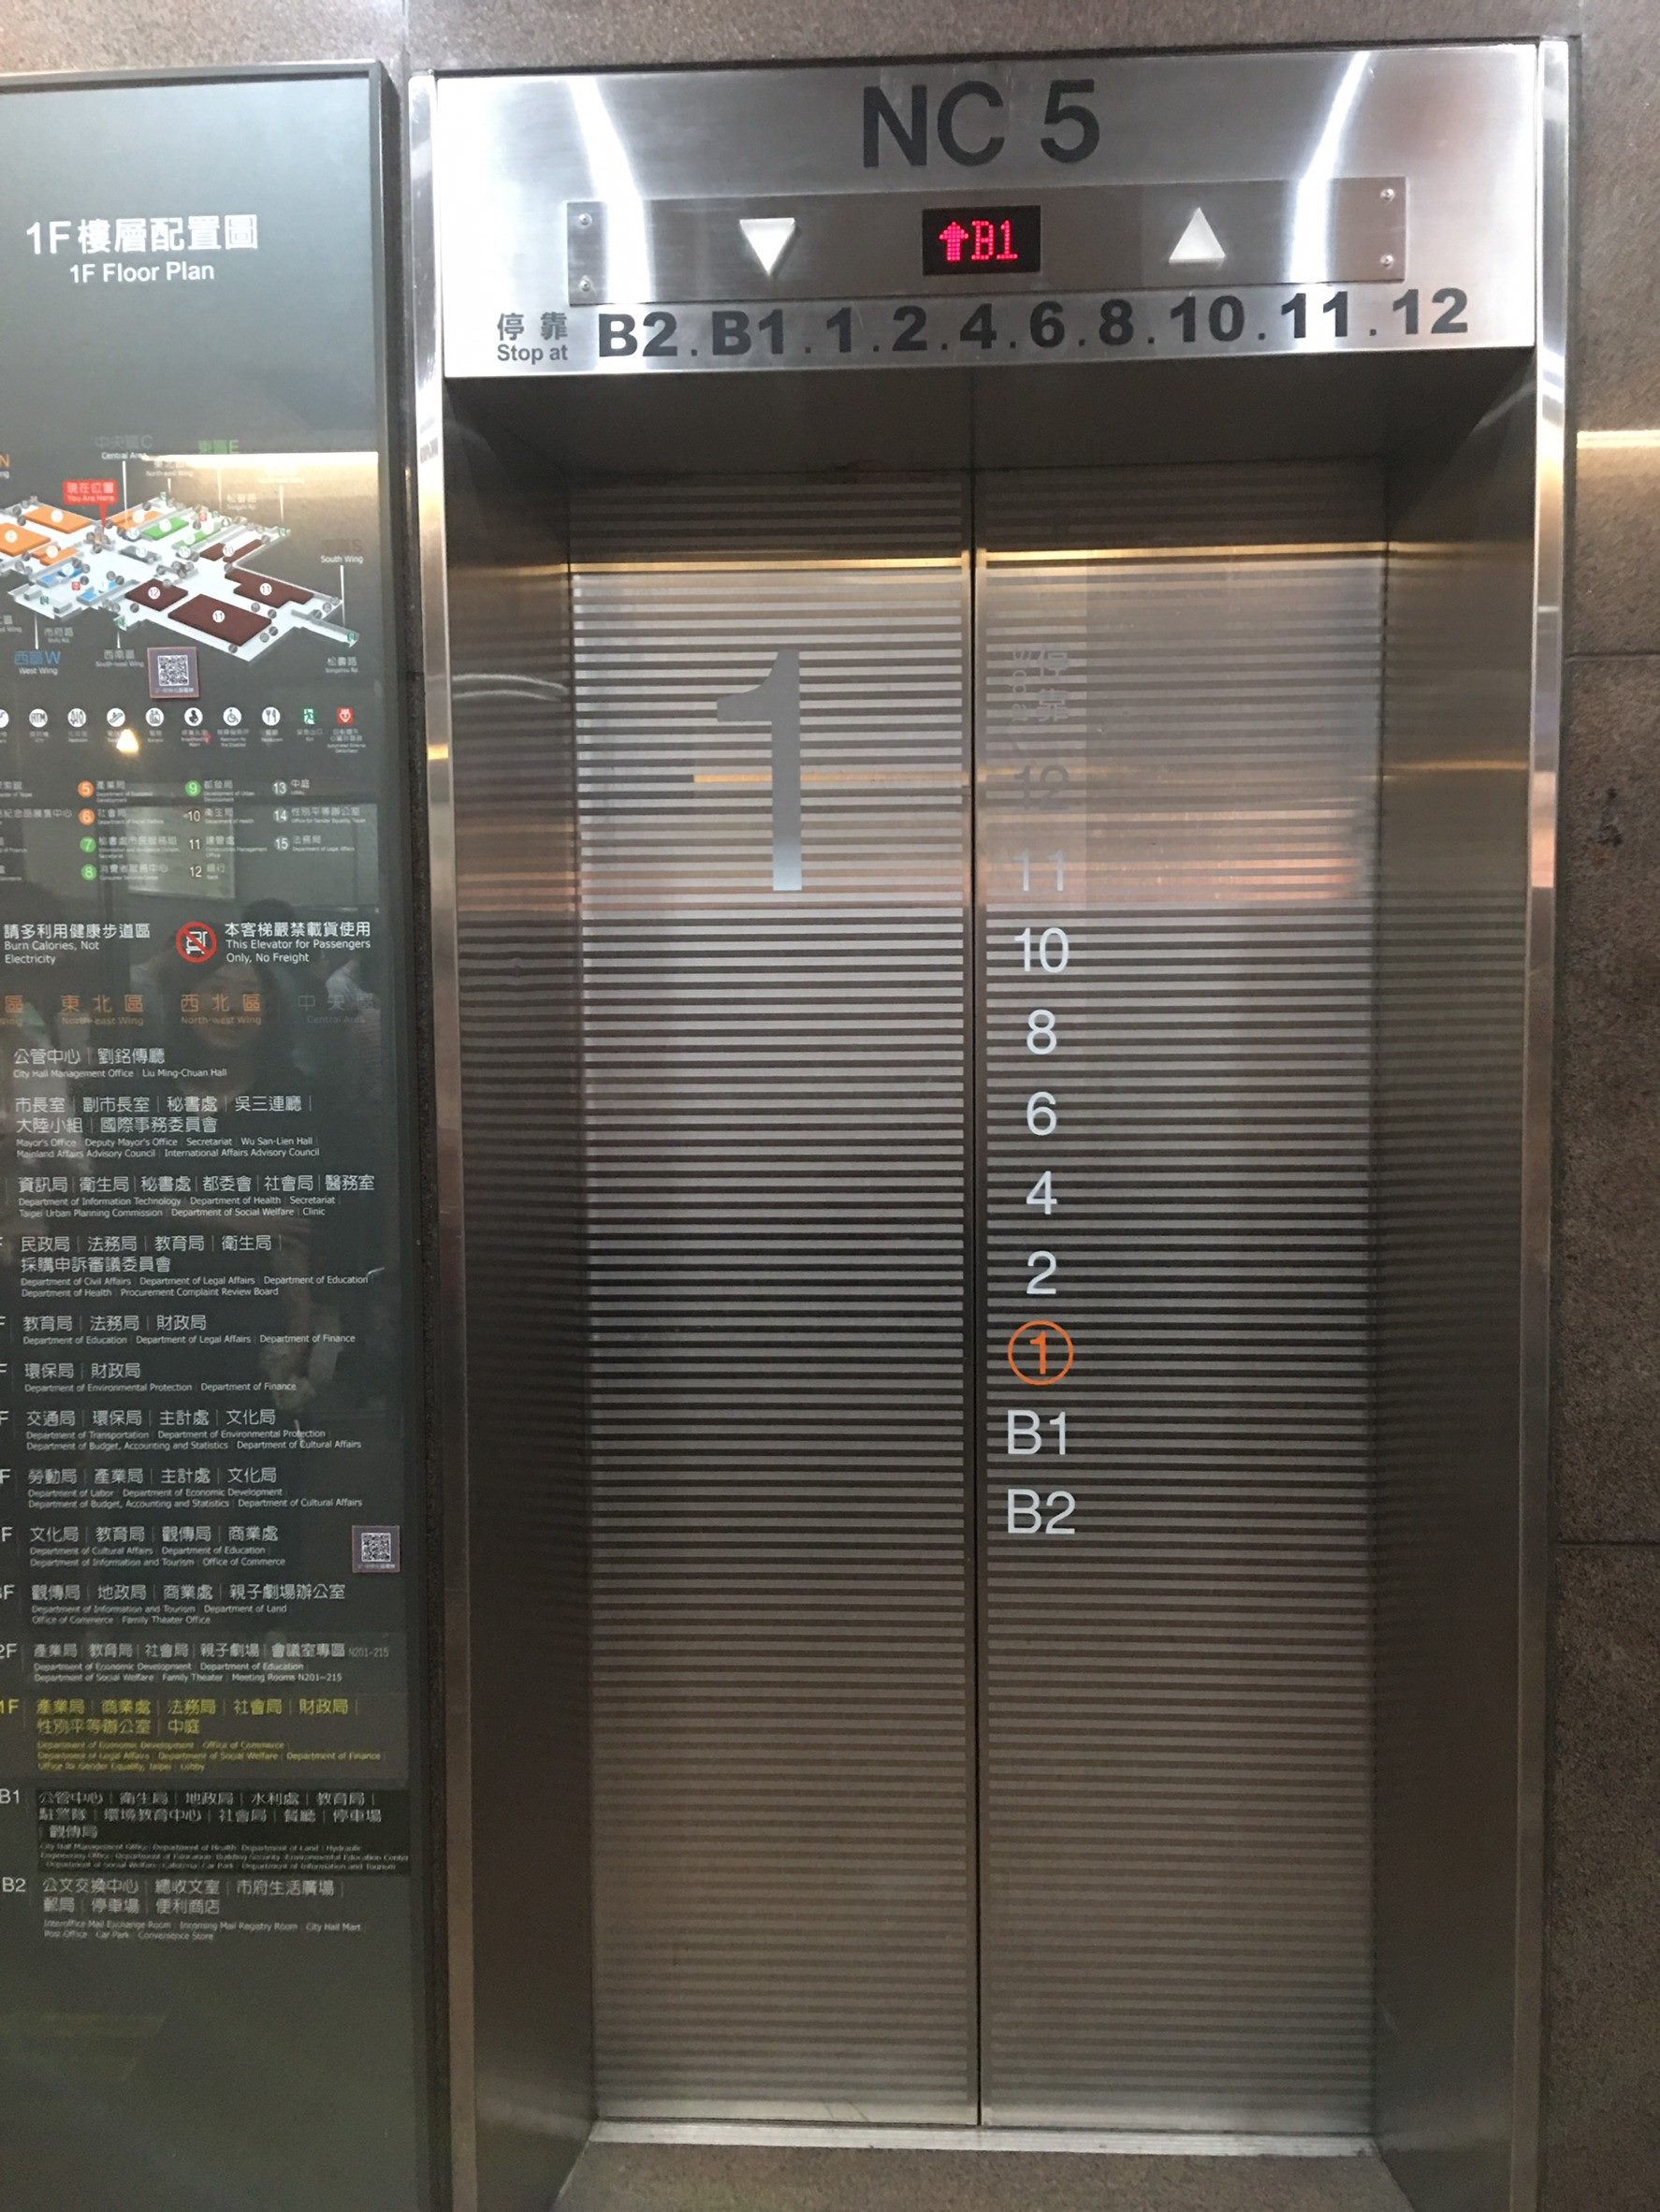 電梯外門標示停靠樓層